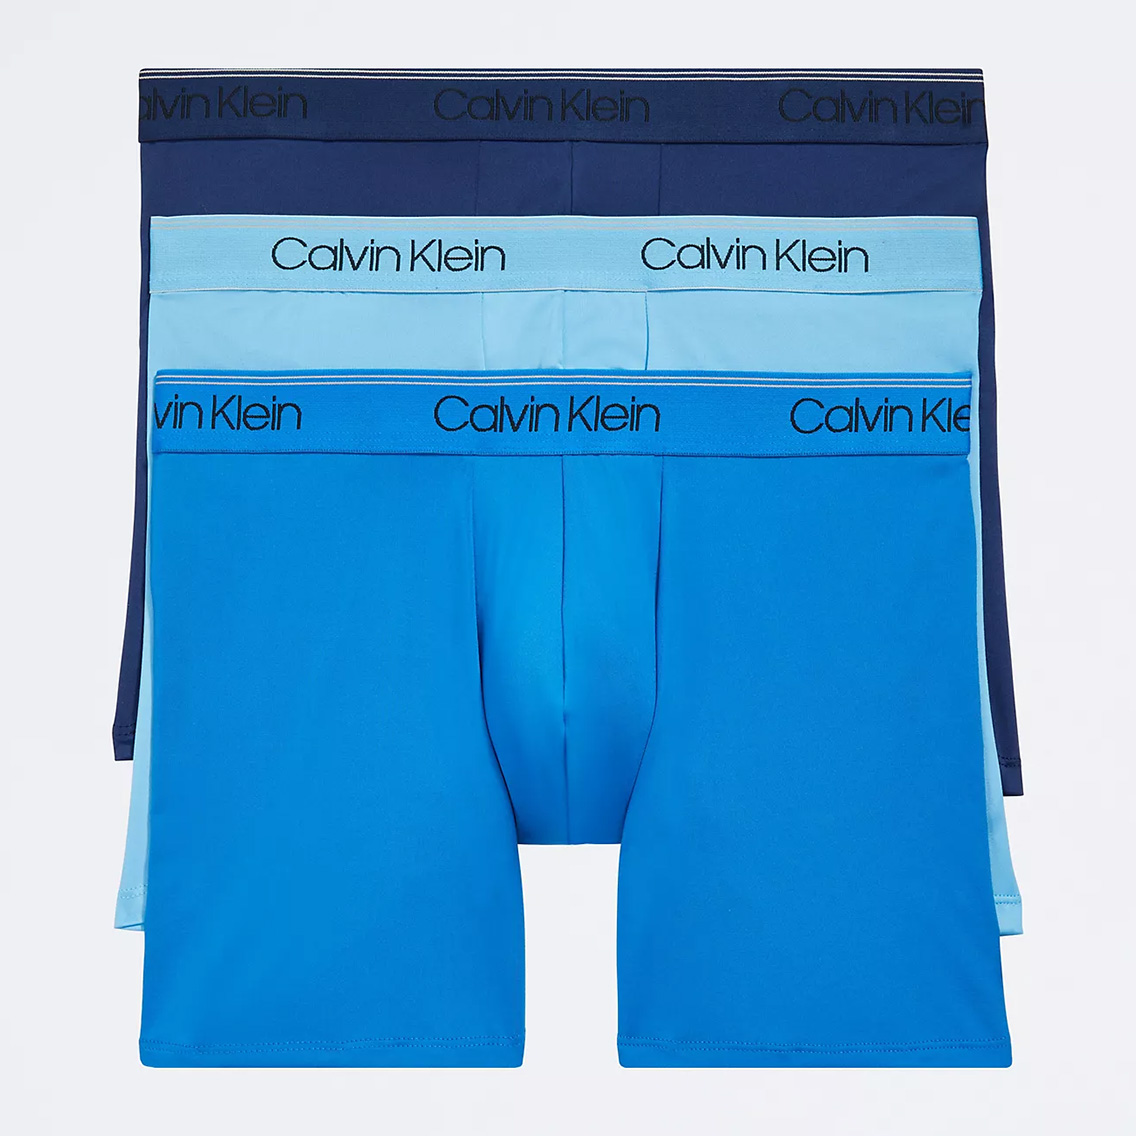 [NB2570-400] Calvin Klein カルバンクライン ボクサーパンツ メンズ アンダーウェア インナー 男性 下着 ブランド おすすめ 人気 プレゼ